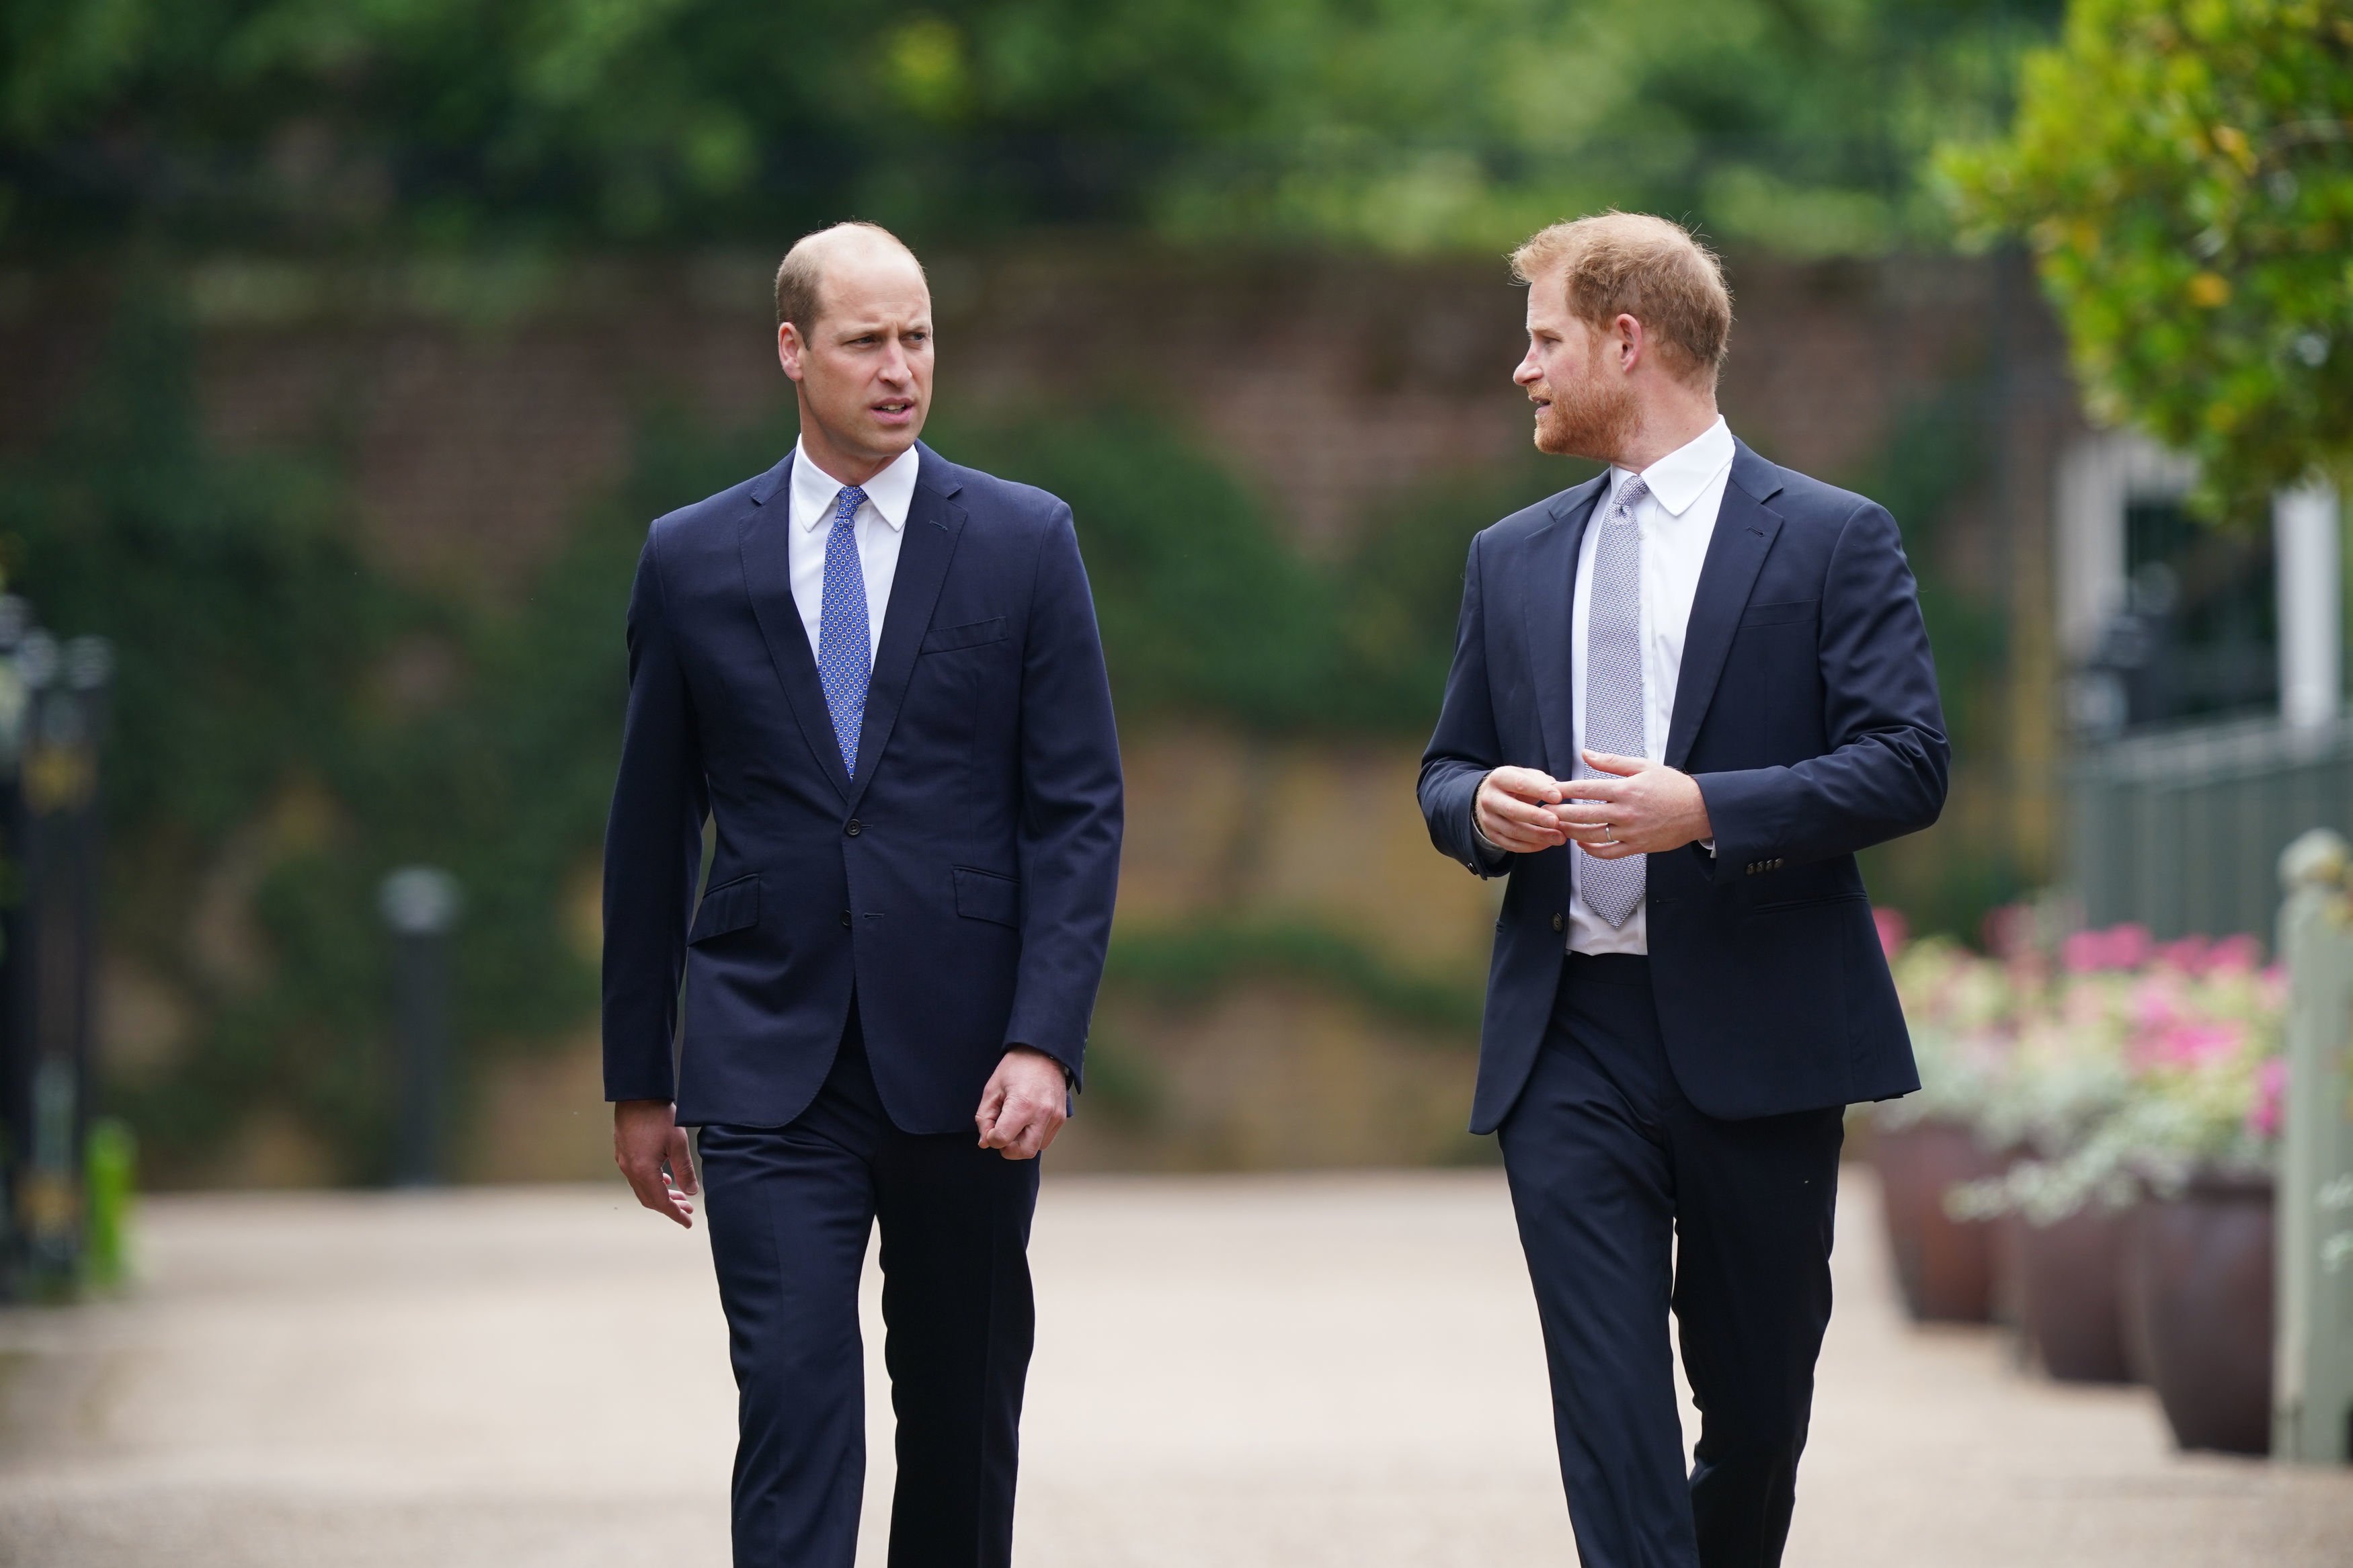 Le prince William, duc de Cambridge, et le prince Harry, duc de Sussex, arrivent pour l'inauguration d'une statue qu'ils ont commandée pour leur mère Diana, princesse de Galles, dans le Sunken Garden du palais de Kensington. | Source : Getty Images